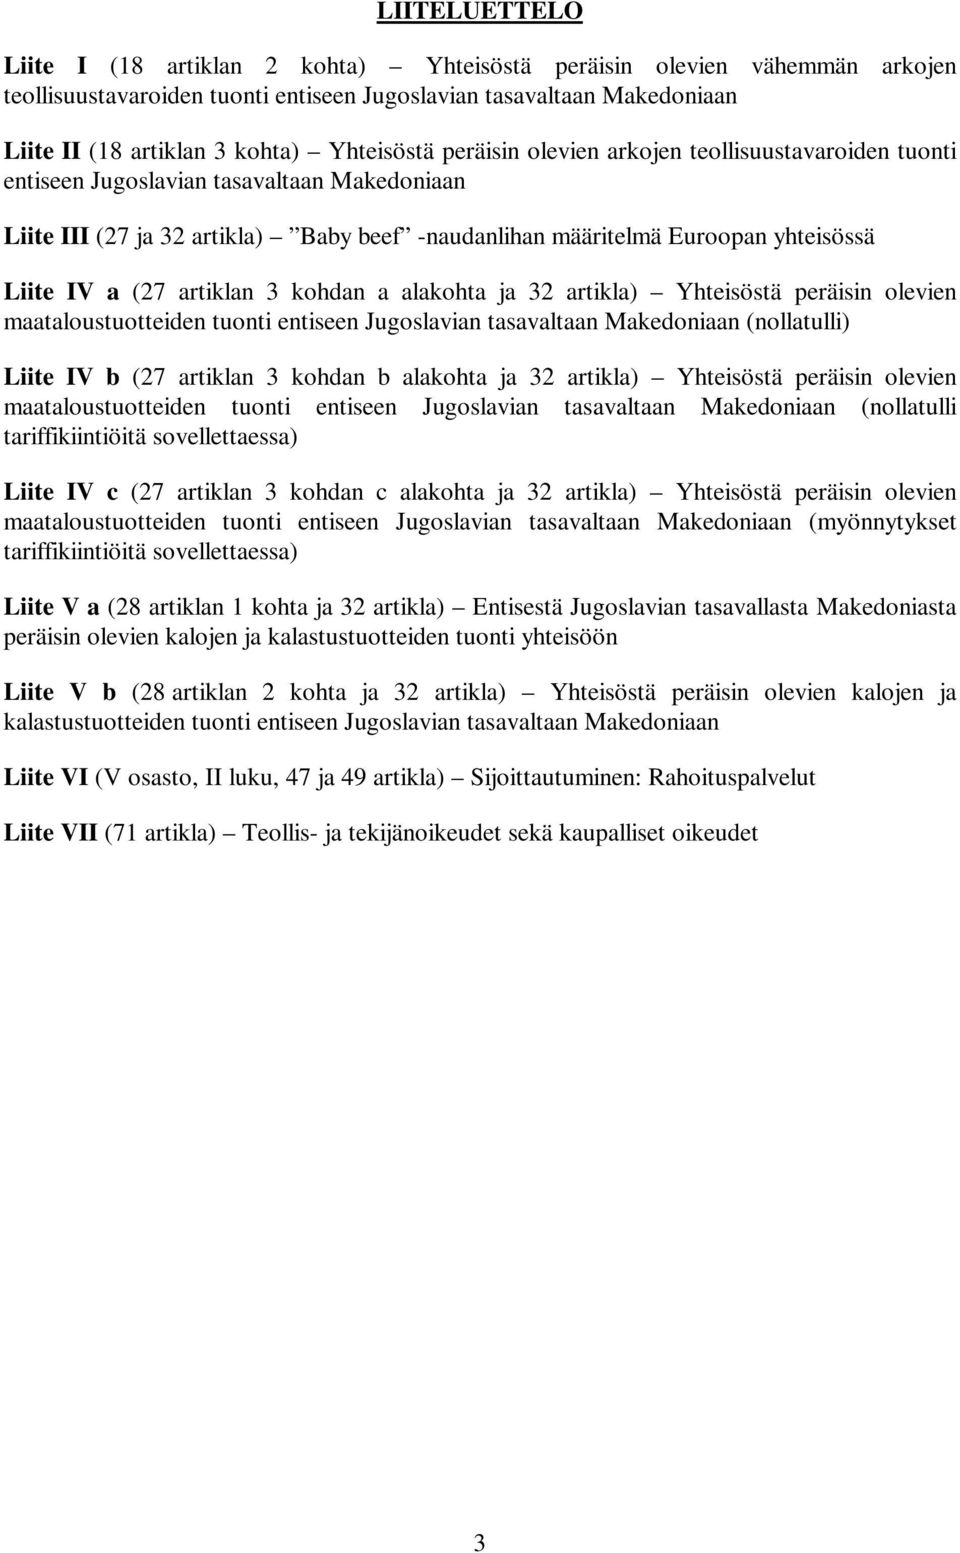 IV a (27 artiklan 3 kohdan a alakohta ja 32 artikla) Yhteisöstä peräisin olevien maataloustuotteiden tuonti entiseen Jugoslavian tasavaltaan Makedoniaan (nollatulli) Liite IV b (27 artiklan 3 kohdan